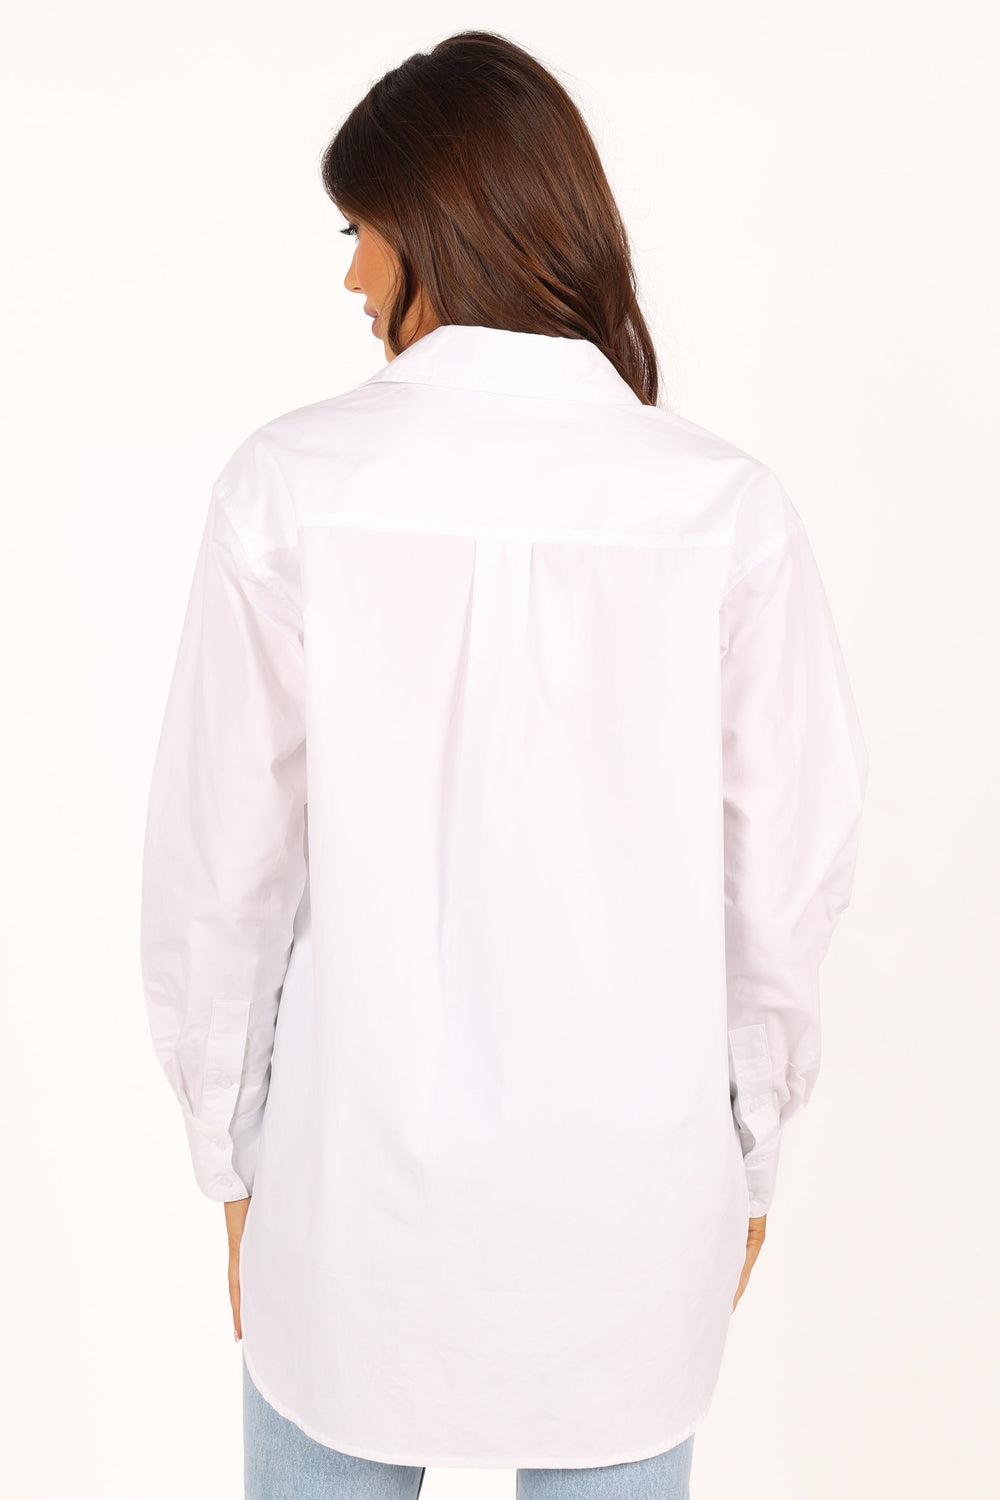 TOPS @Tal Oversized Shirt - White (waiting on bulk)